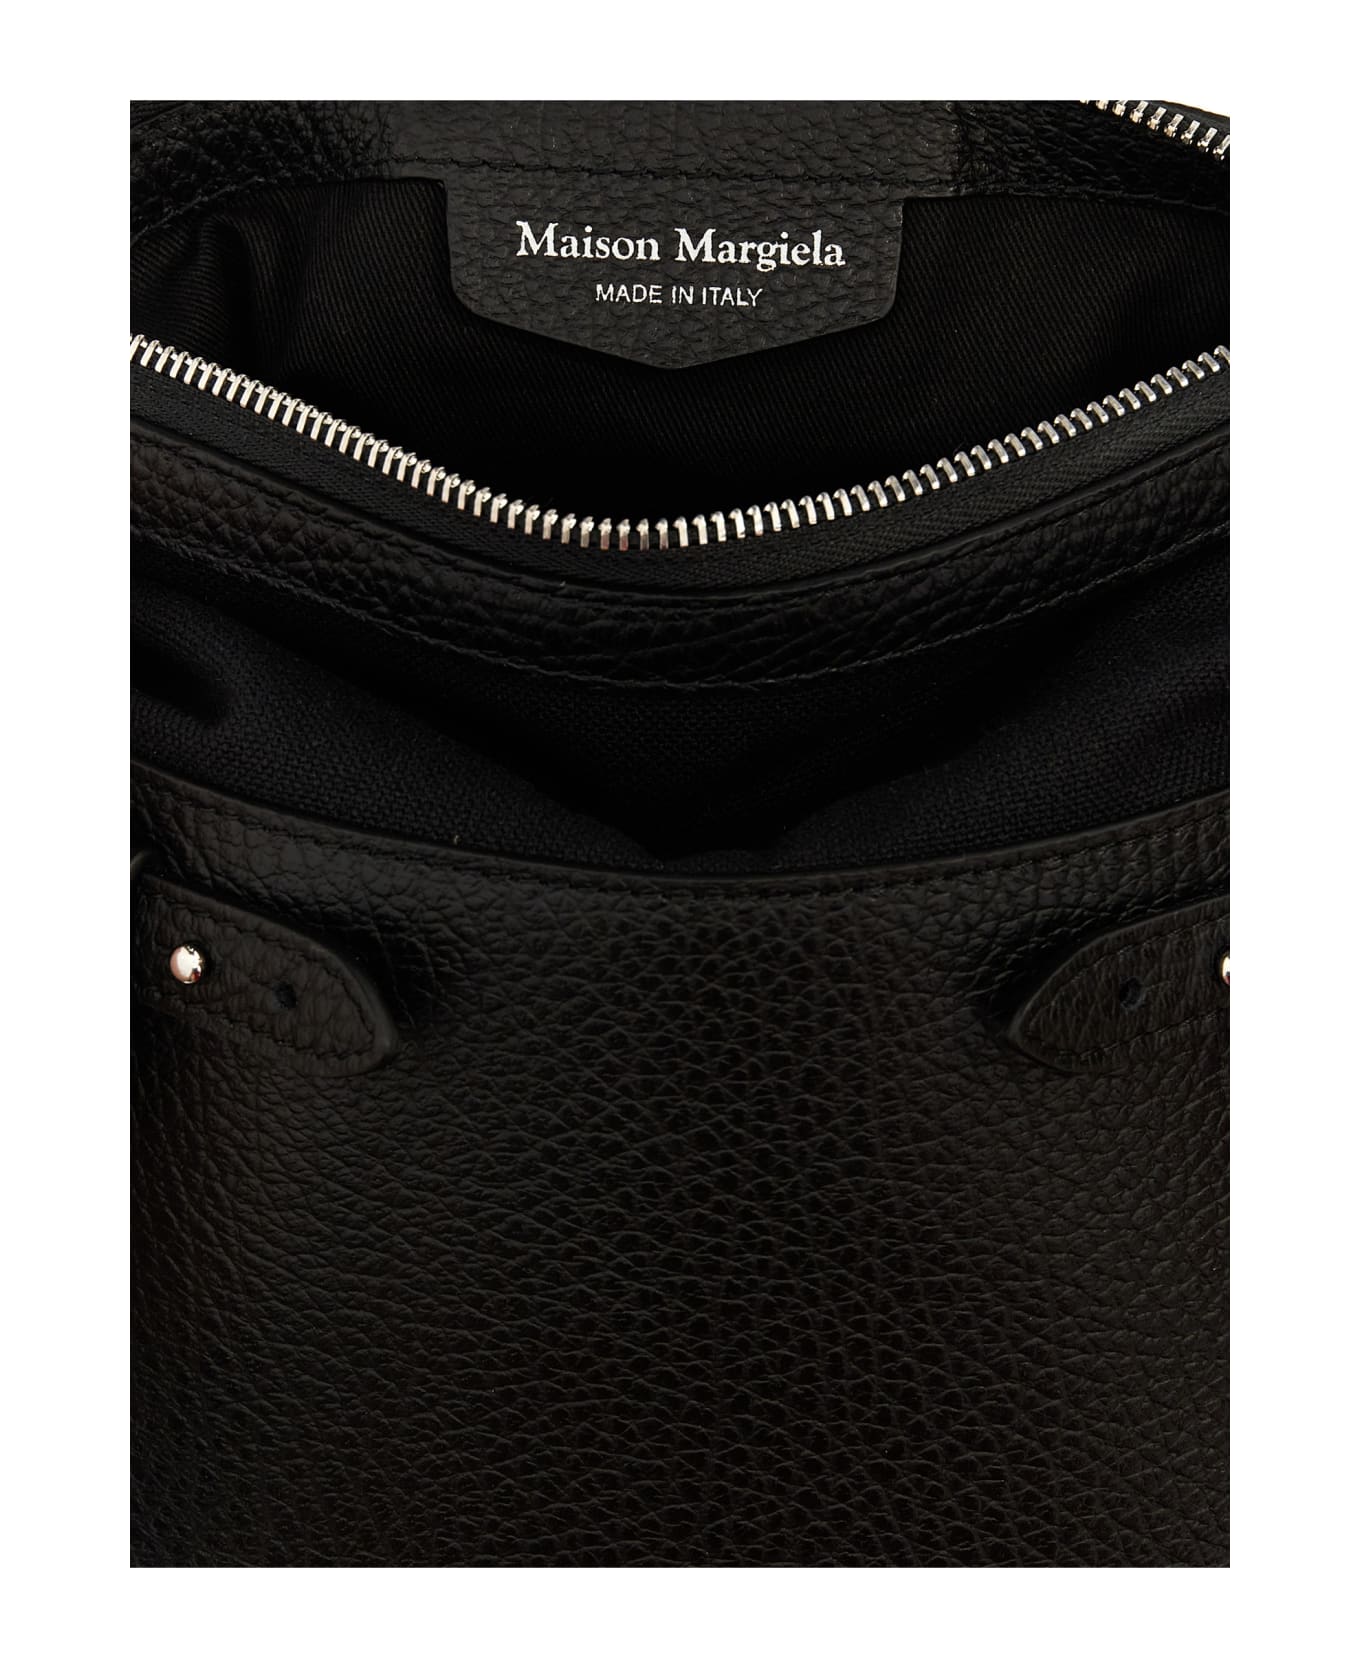 Maison Margiela '5ac Messenger Bag Small' Crossbody Bag - Black  